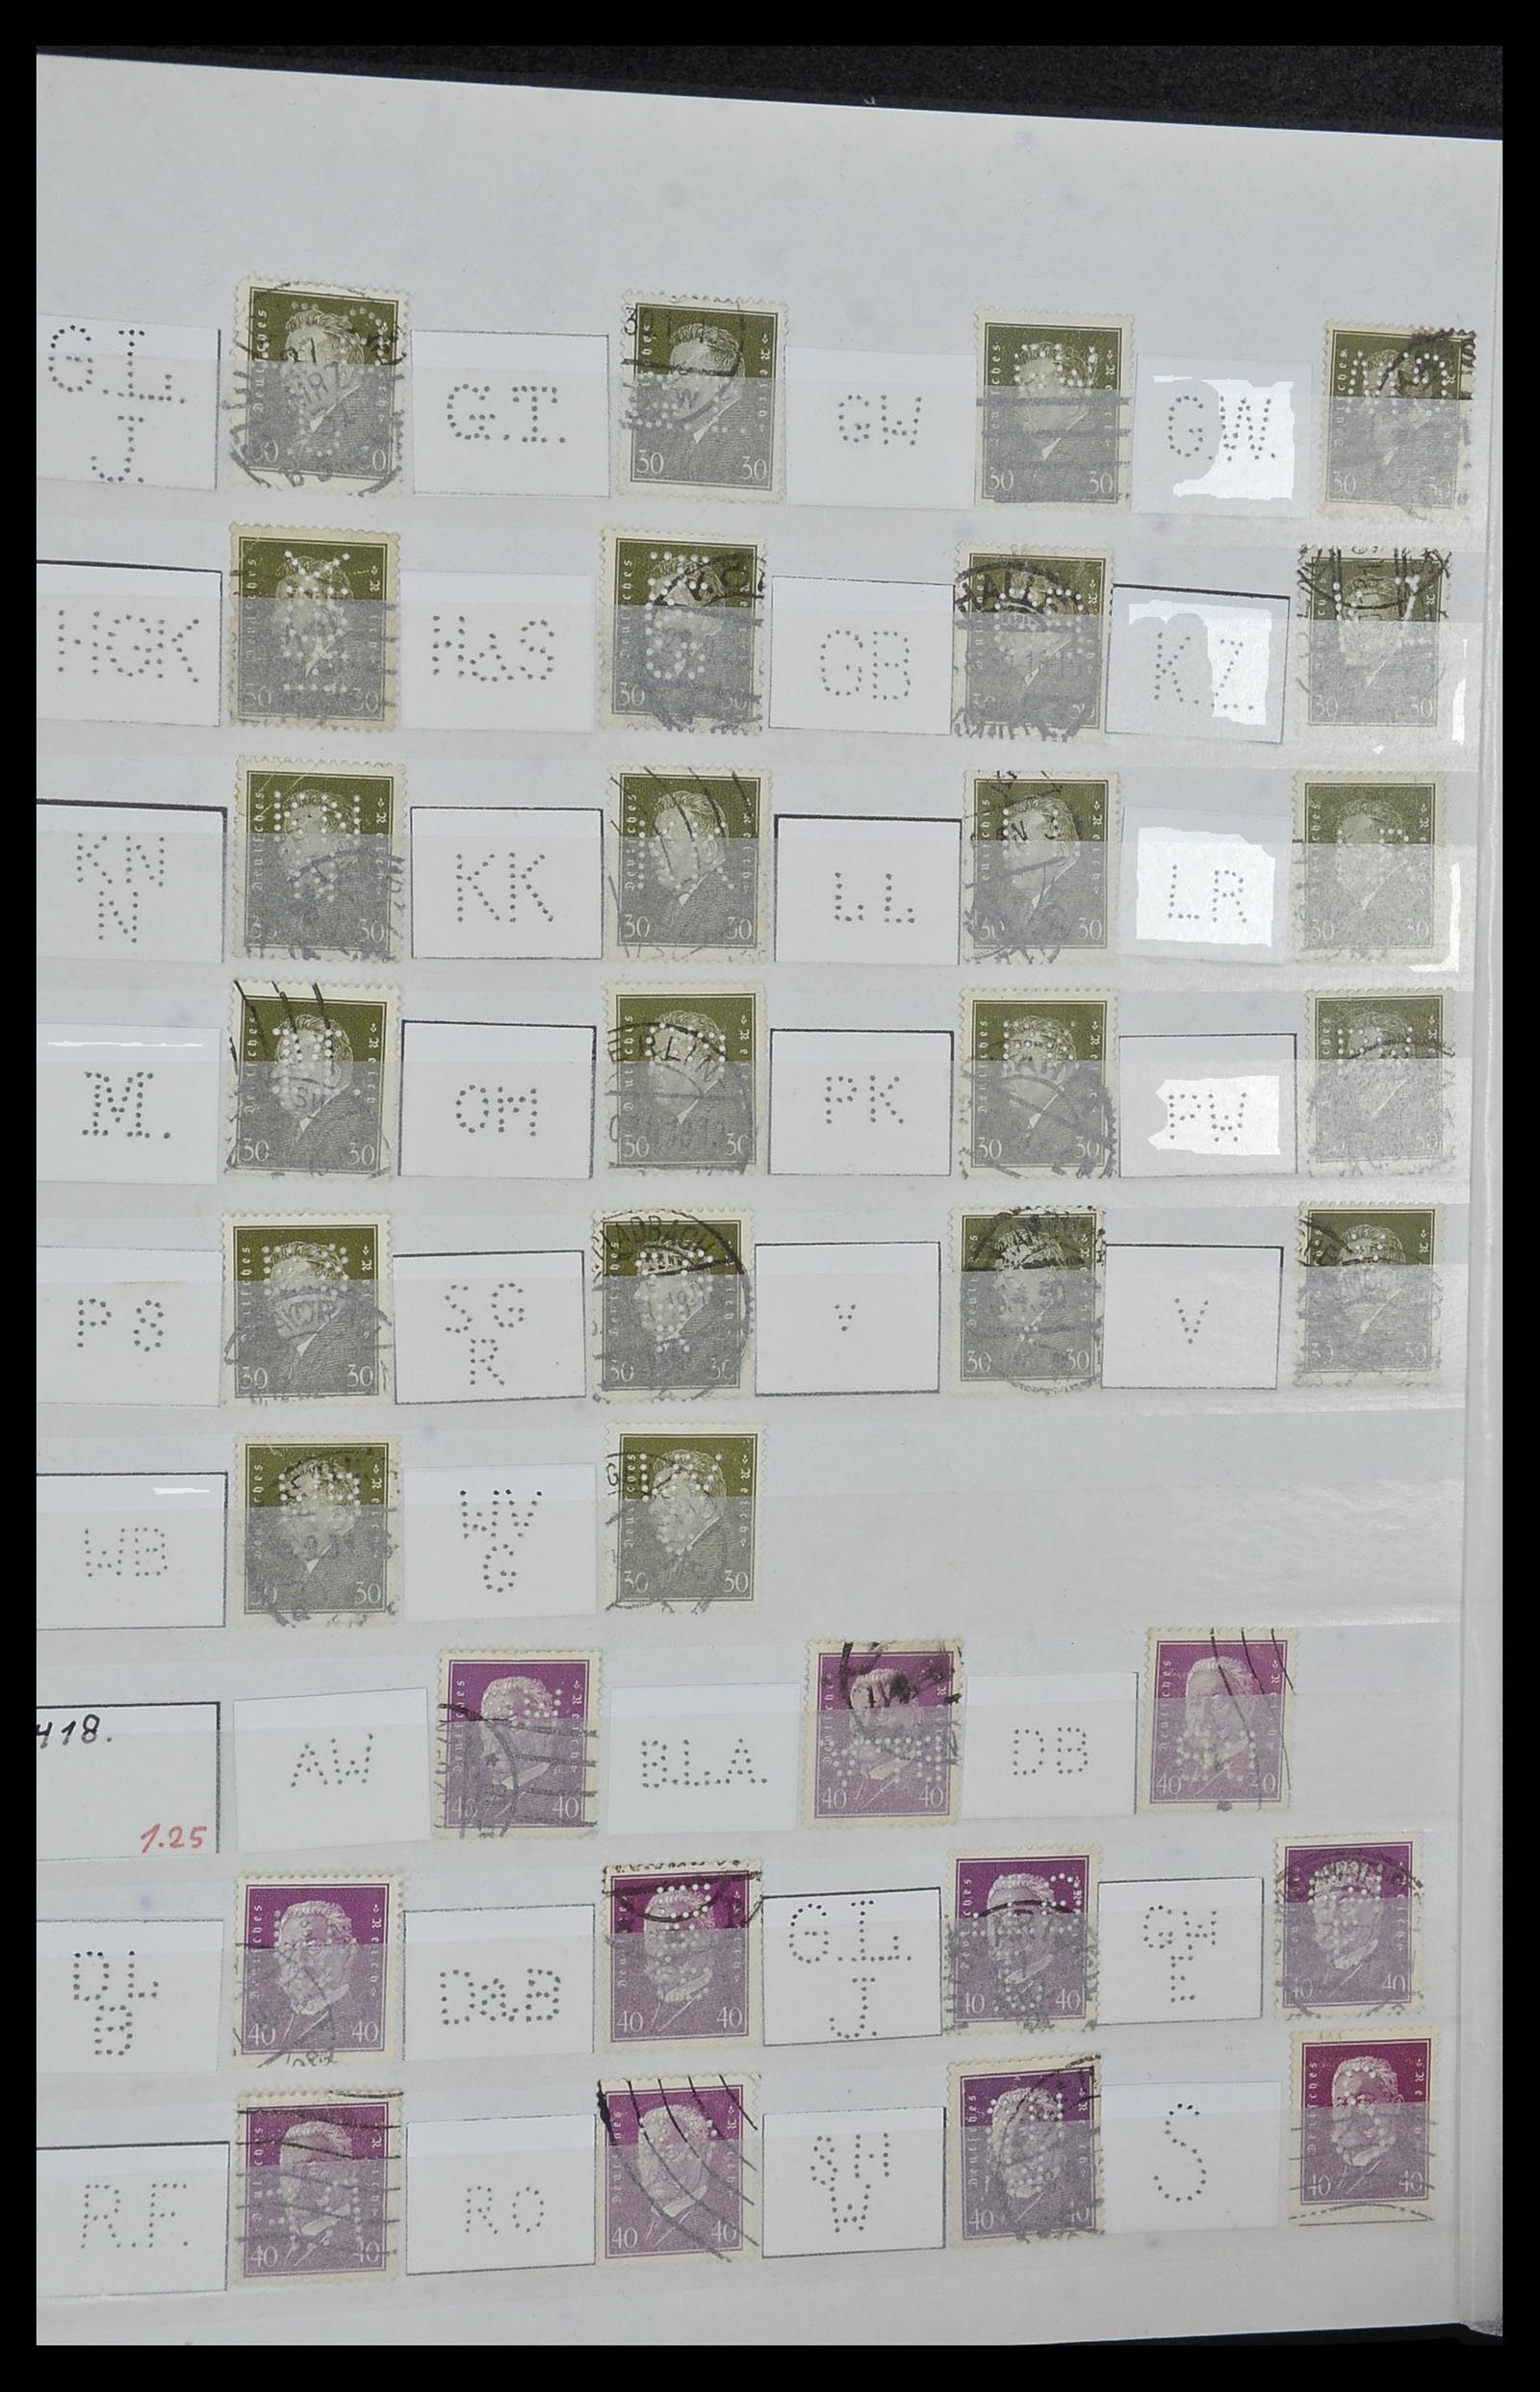 34071 040 - Stamp collection 34071 German Reich perfins 1923-1930.